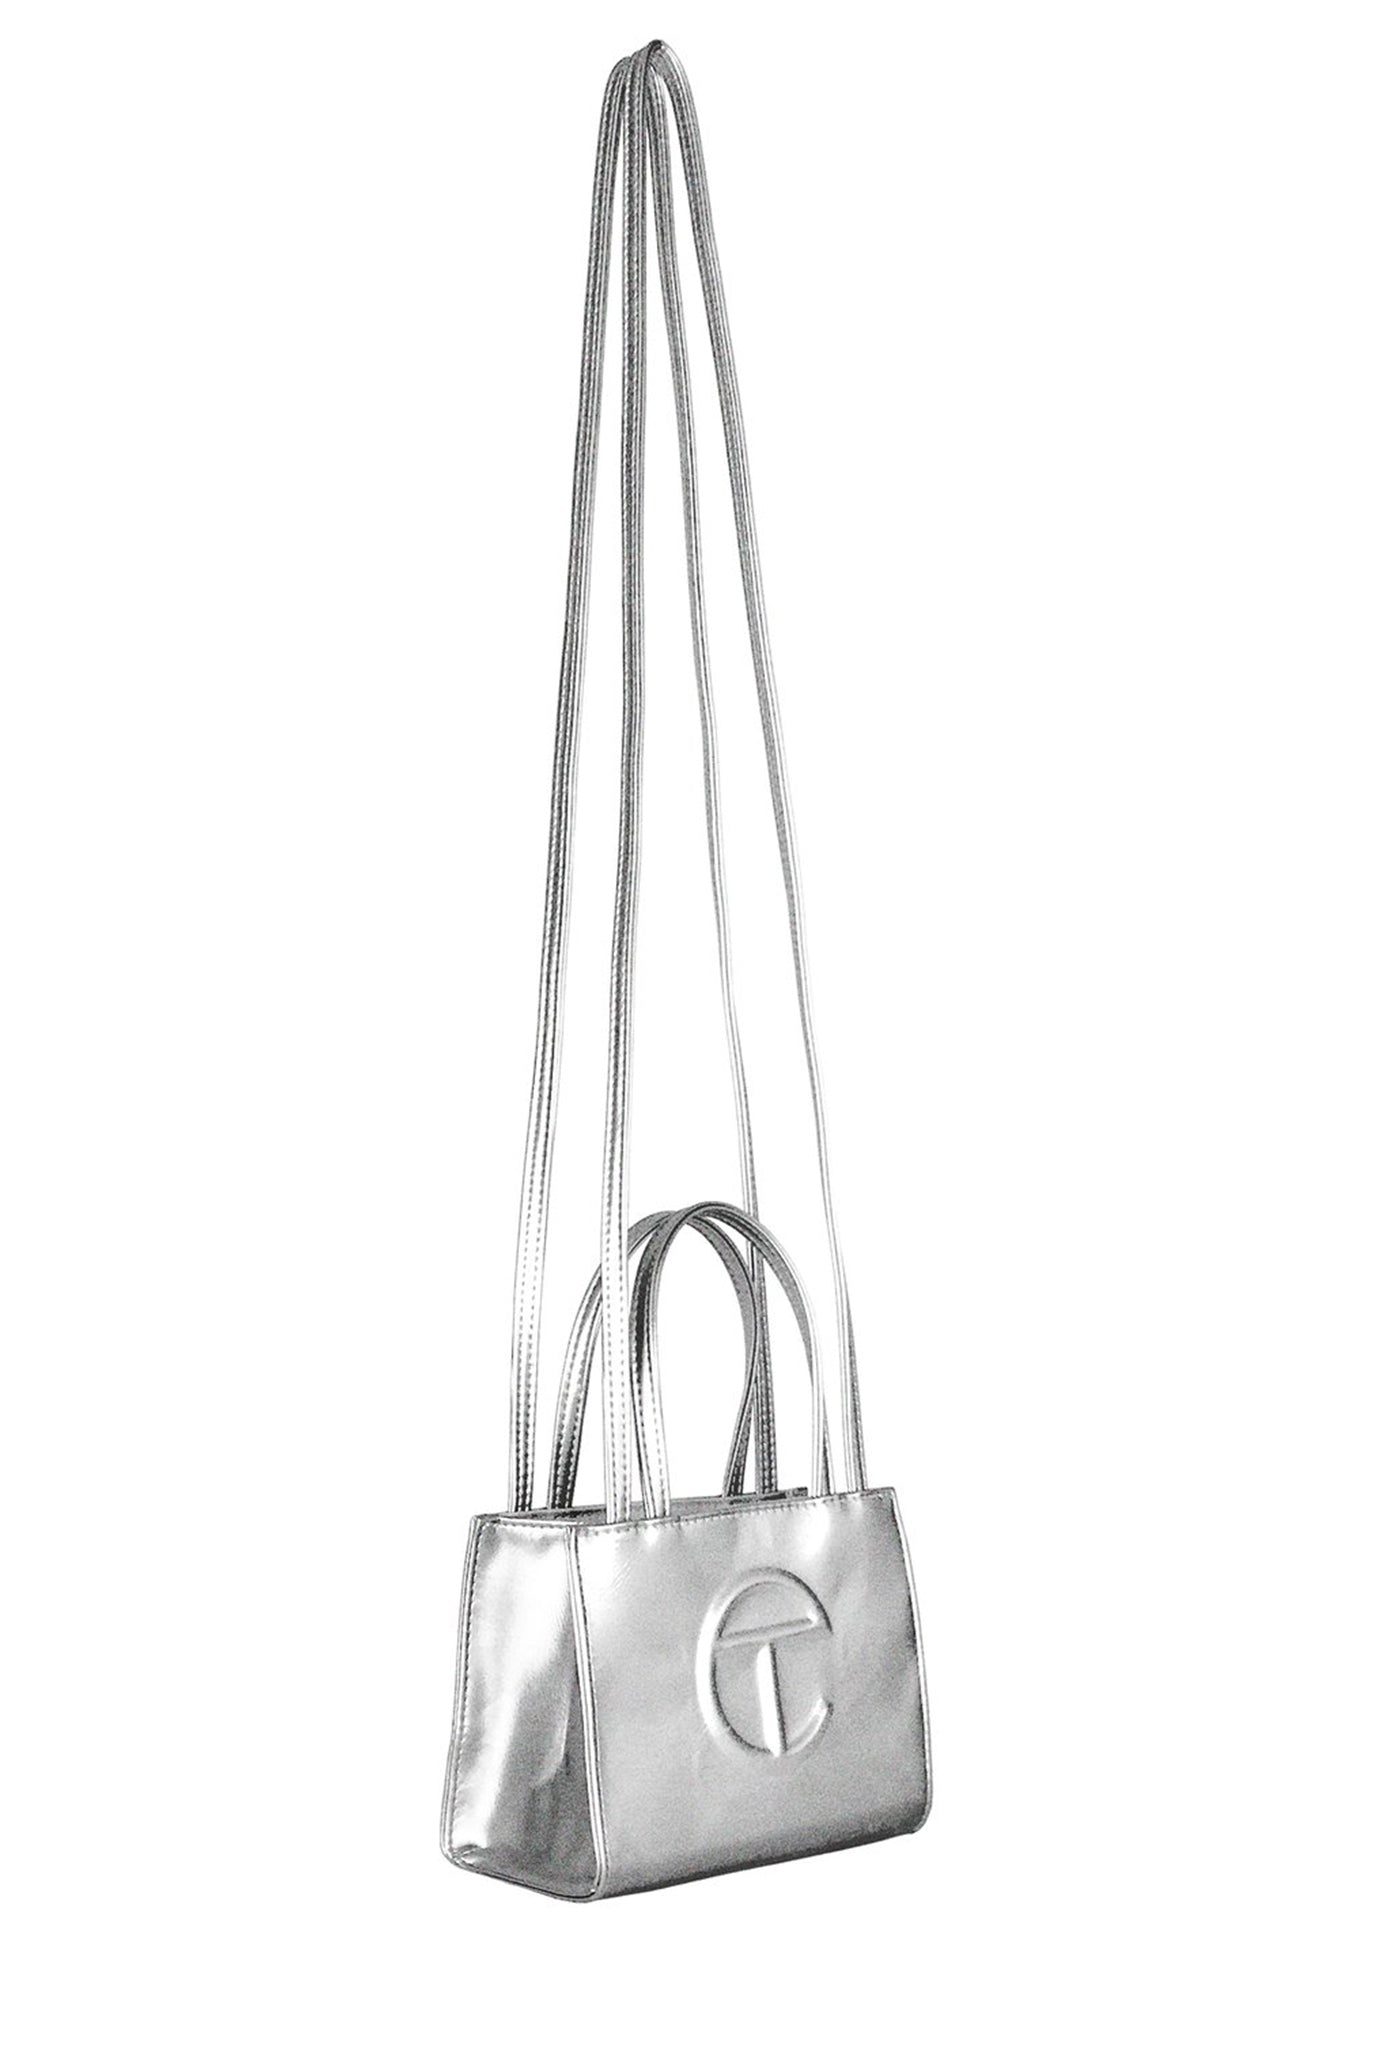 Telfar Small Shopping Bag, Silver